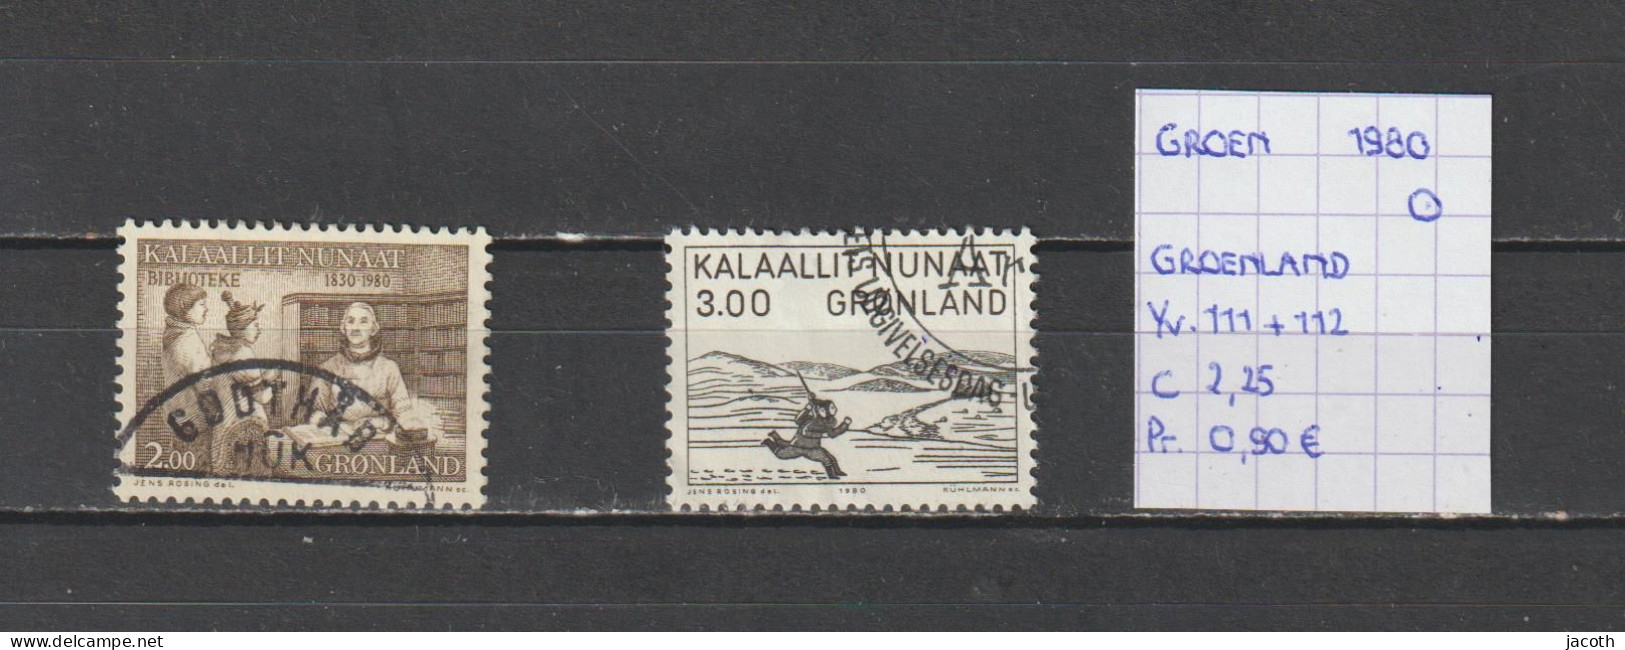 (TJ) Groenland 1980 - YT 111 + 112 (gest./obl./used) - Gebruikt